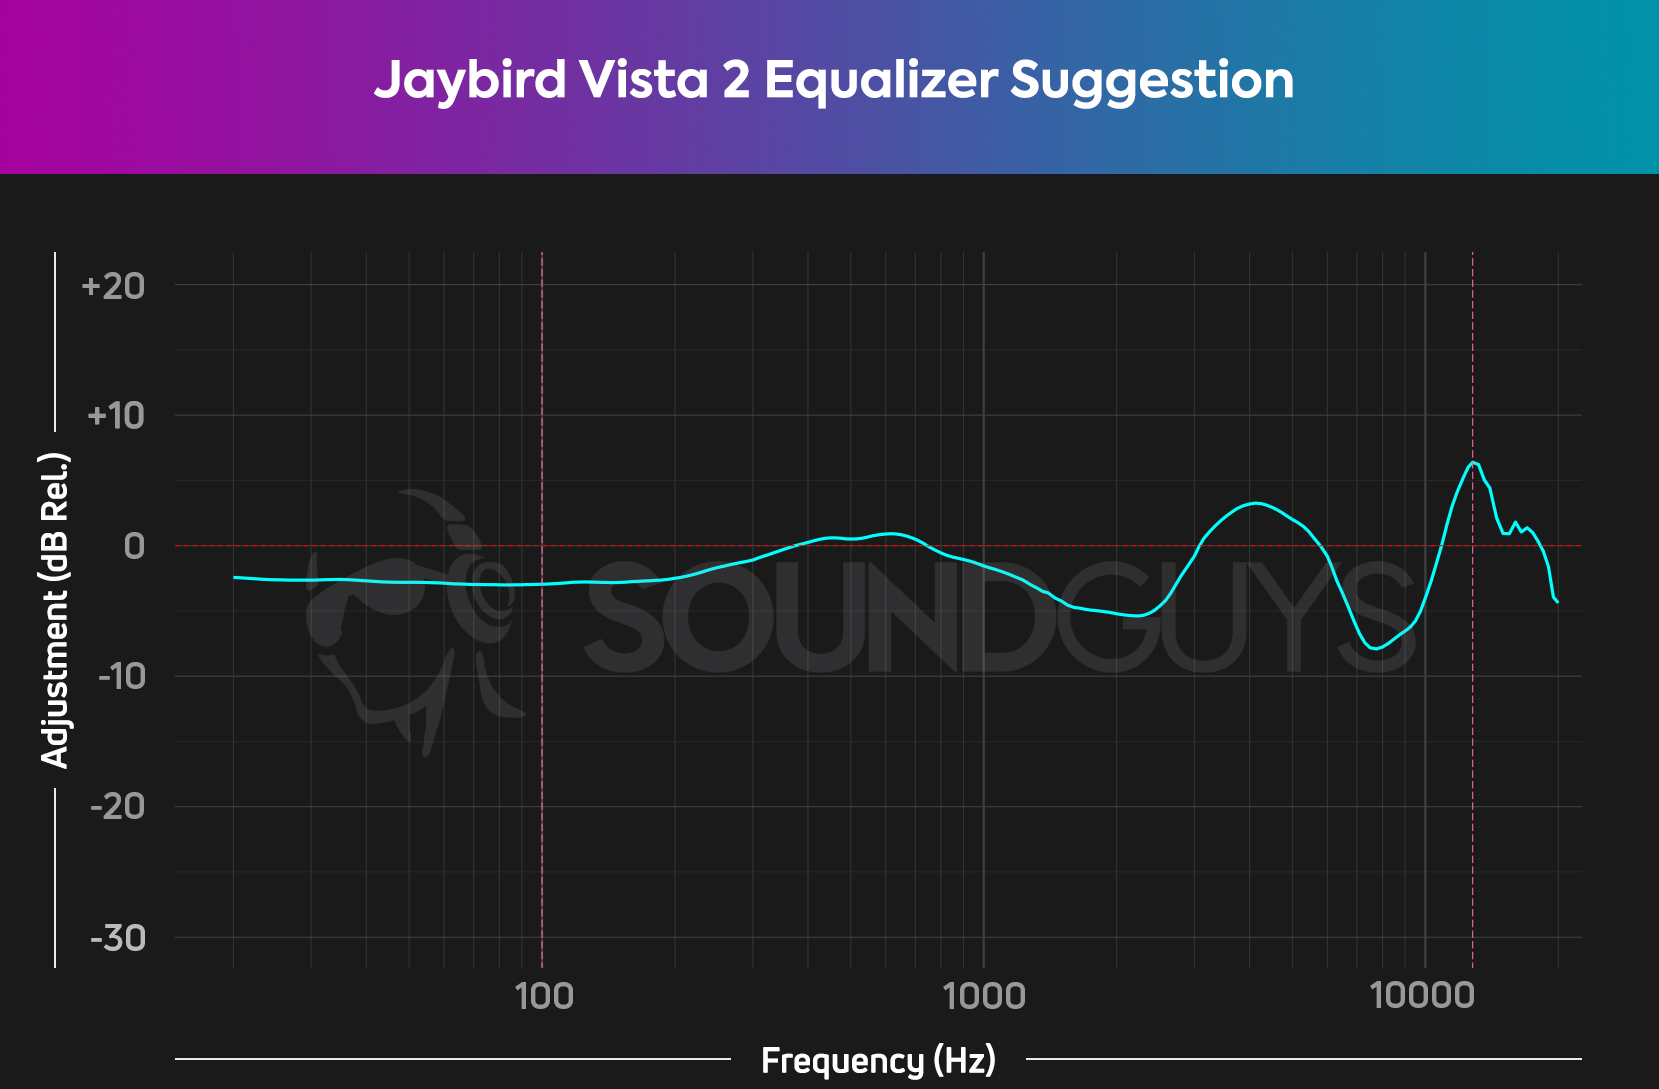 图表显示了我们对Jaybird Vista 2的EQ建议。